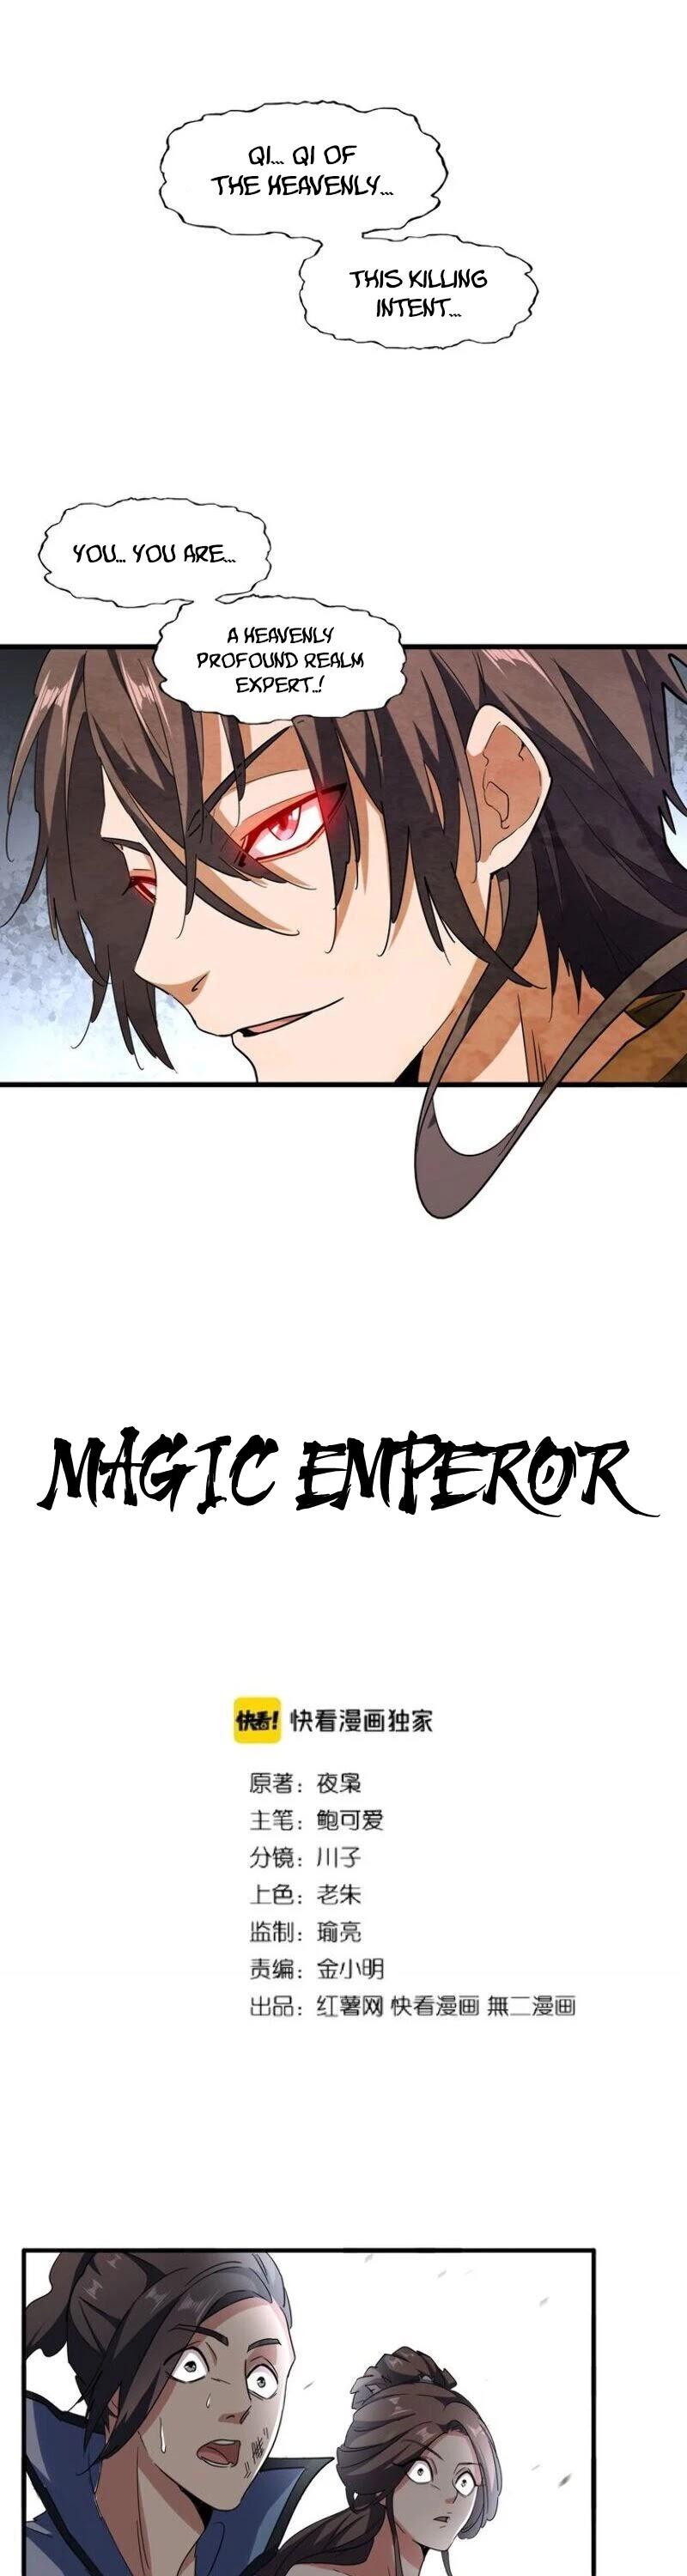 Magic Emperor Chapter 106 page 2 - Mangakakalot